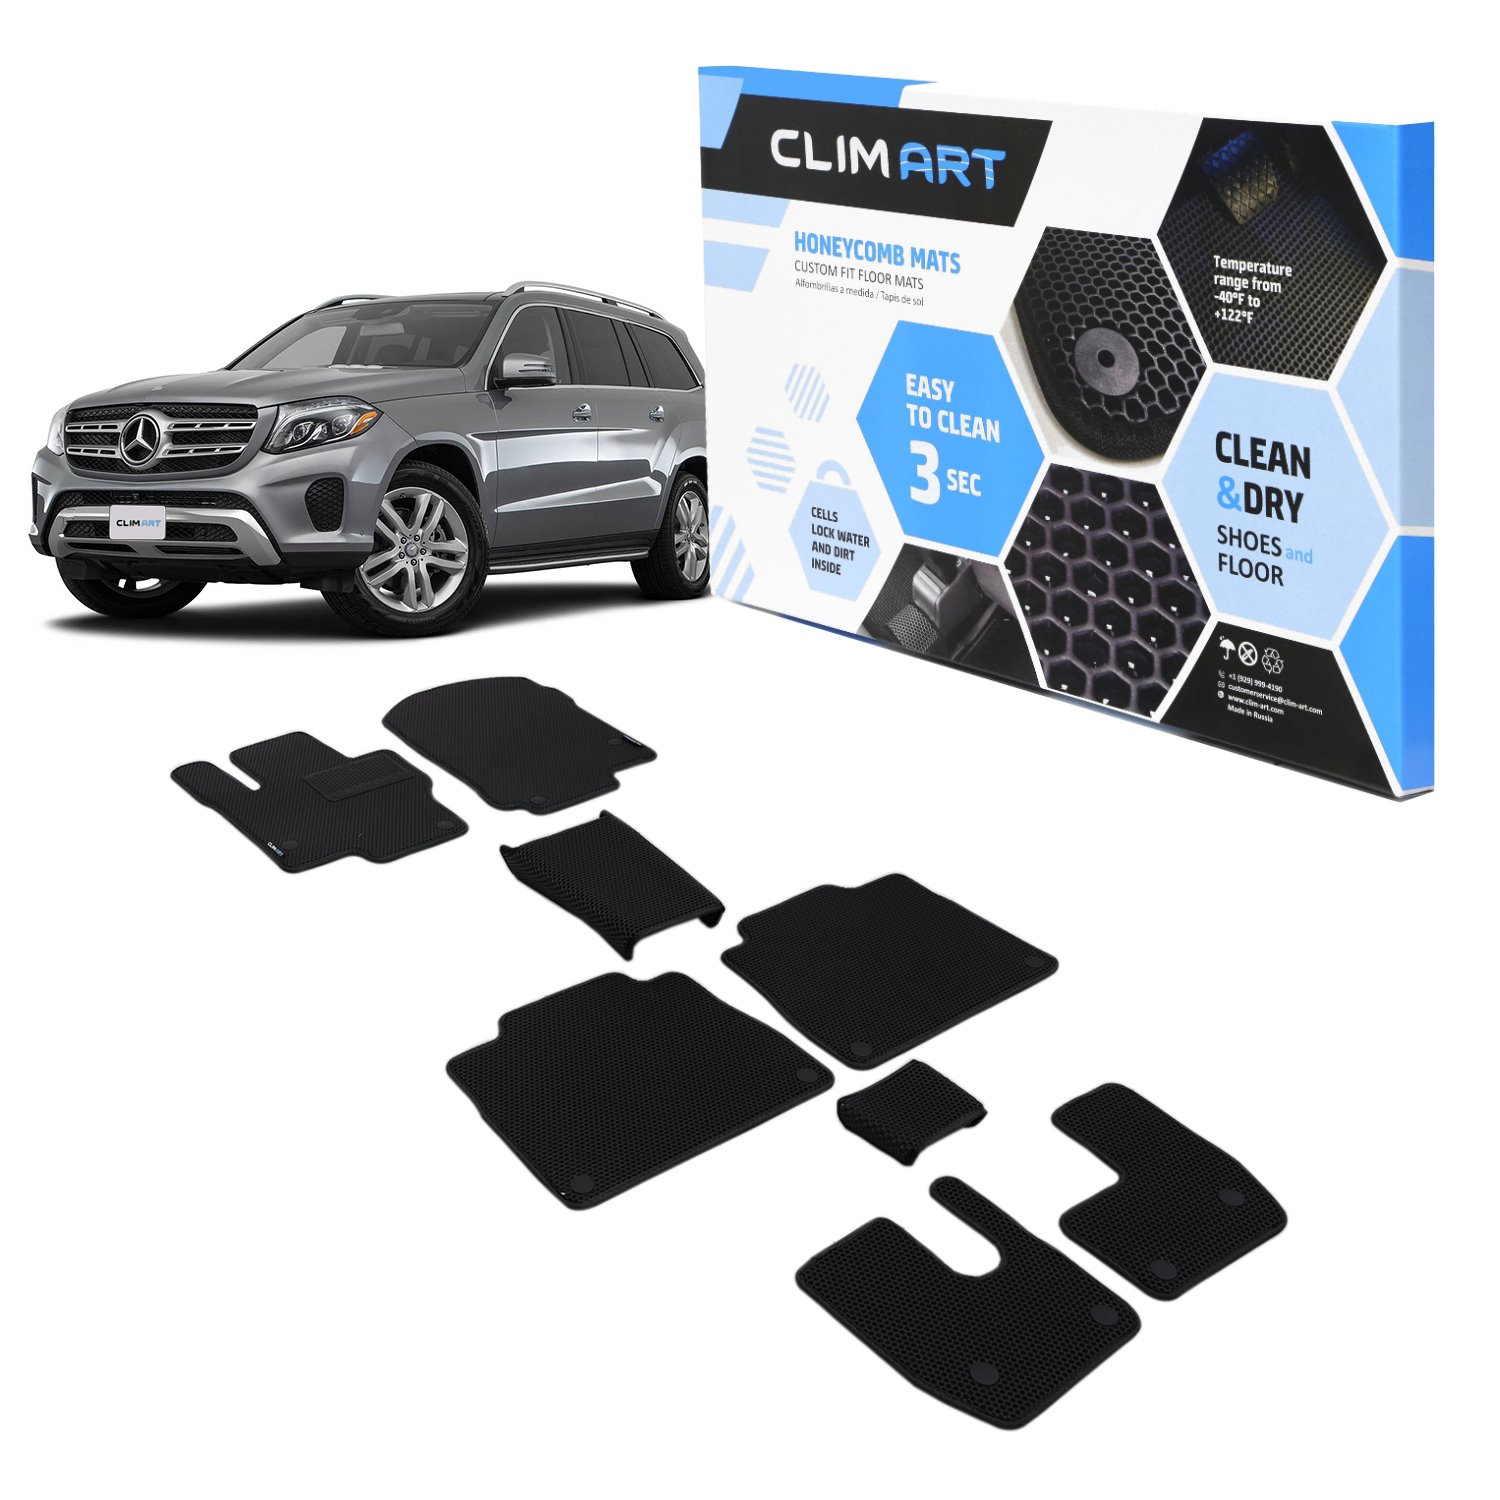 CLIM ART Honeycomb Custom Fit Floor Mats Fits Select Mercedes GLS